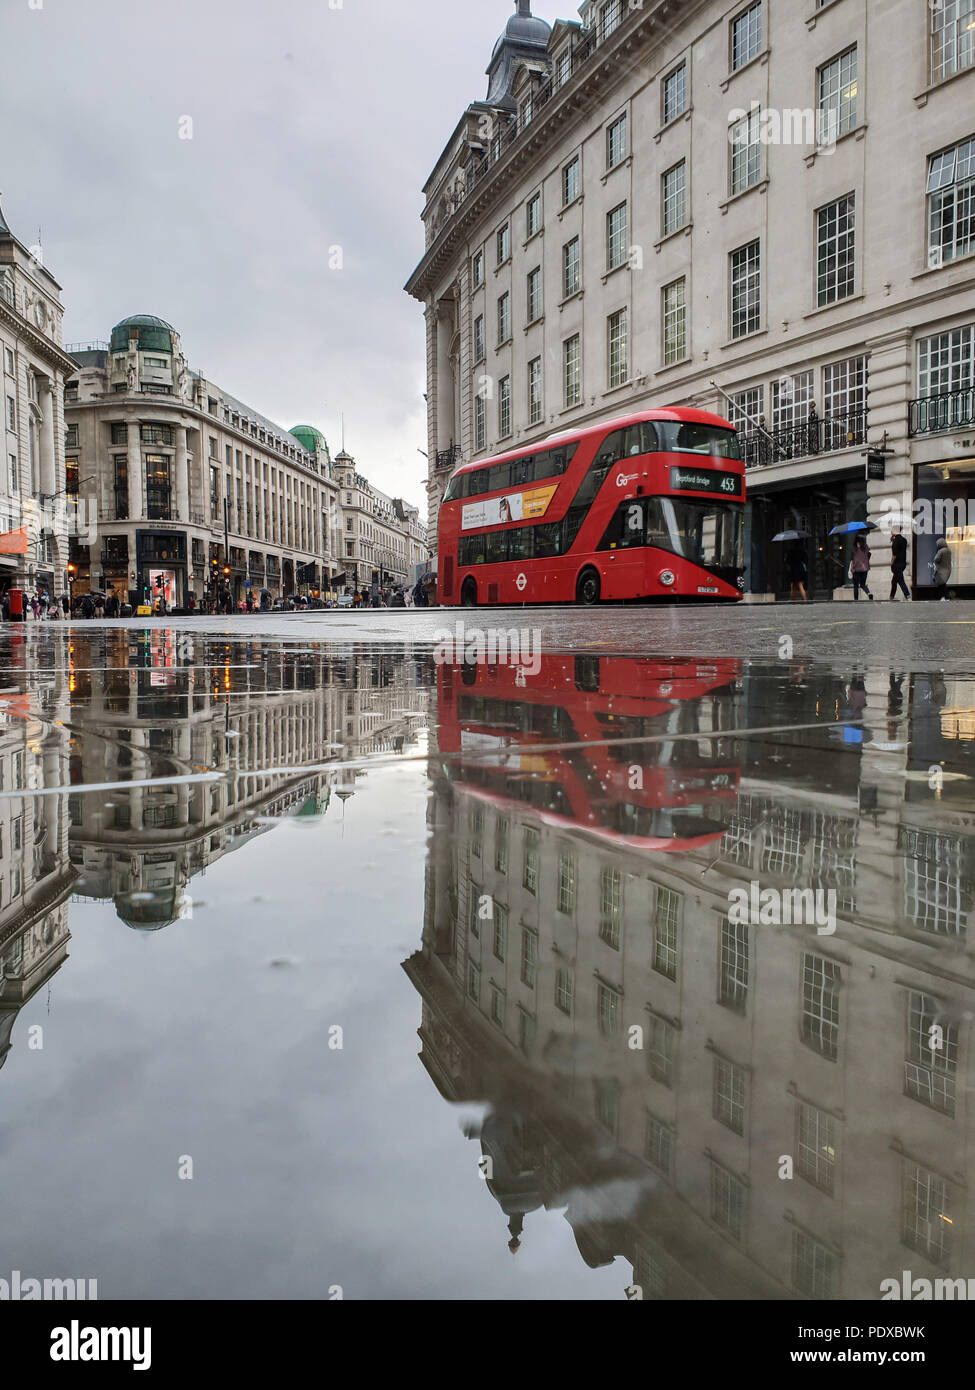 Regents Street. Londres. UK 10 Aug 2018 - une réflexion de London bus à impériale rouge dans une grande flaque d'eau de pluie dans la rue Regent après une des fortes pluies dans le centre de Londres. Roamwithrakhee Crédit /Alamy Live News Banque D'Images